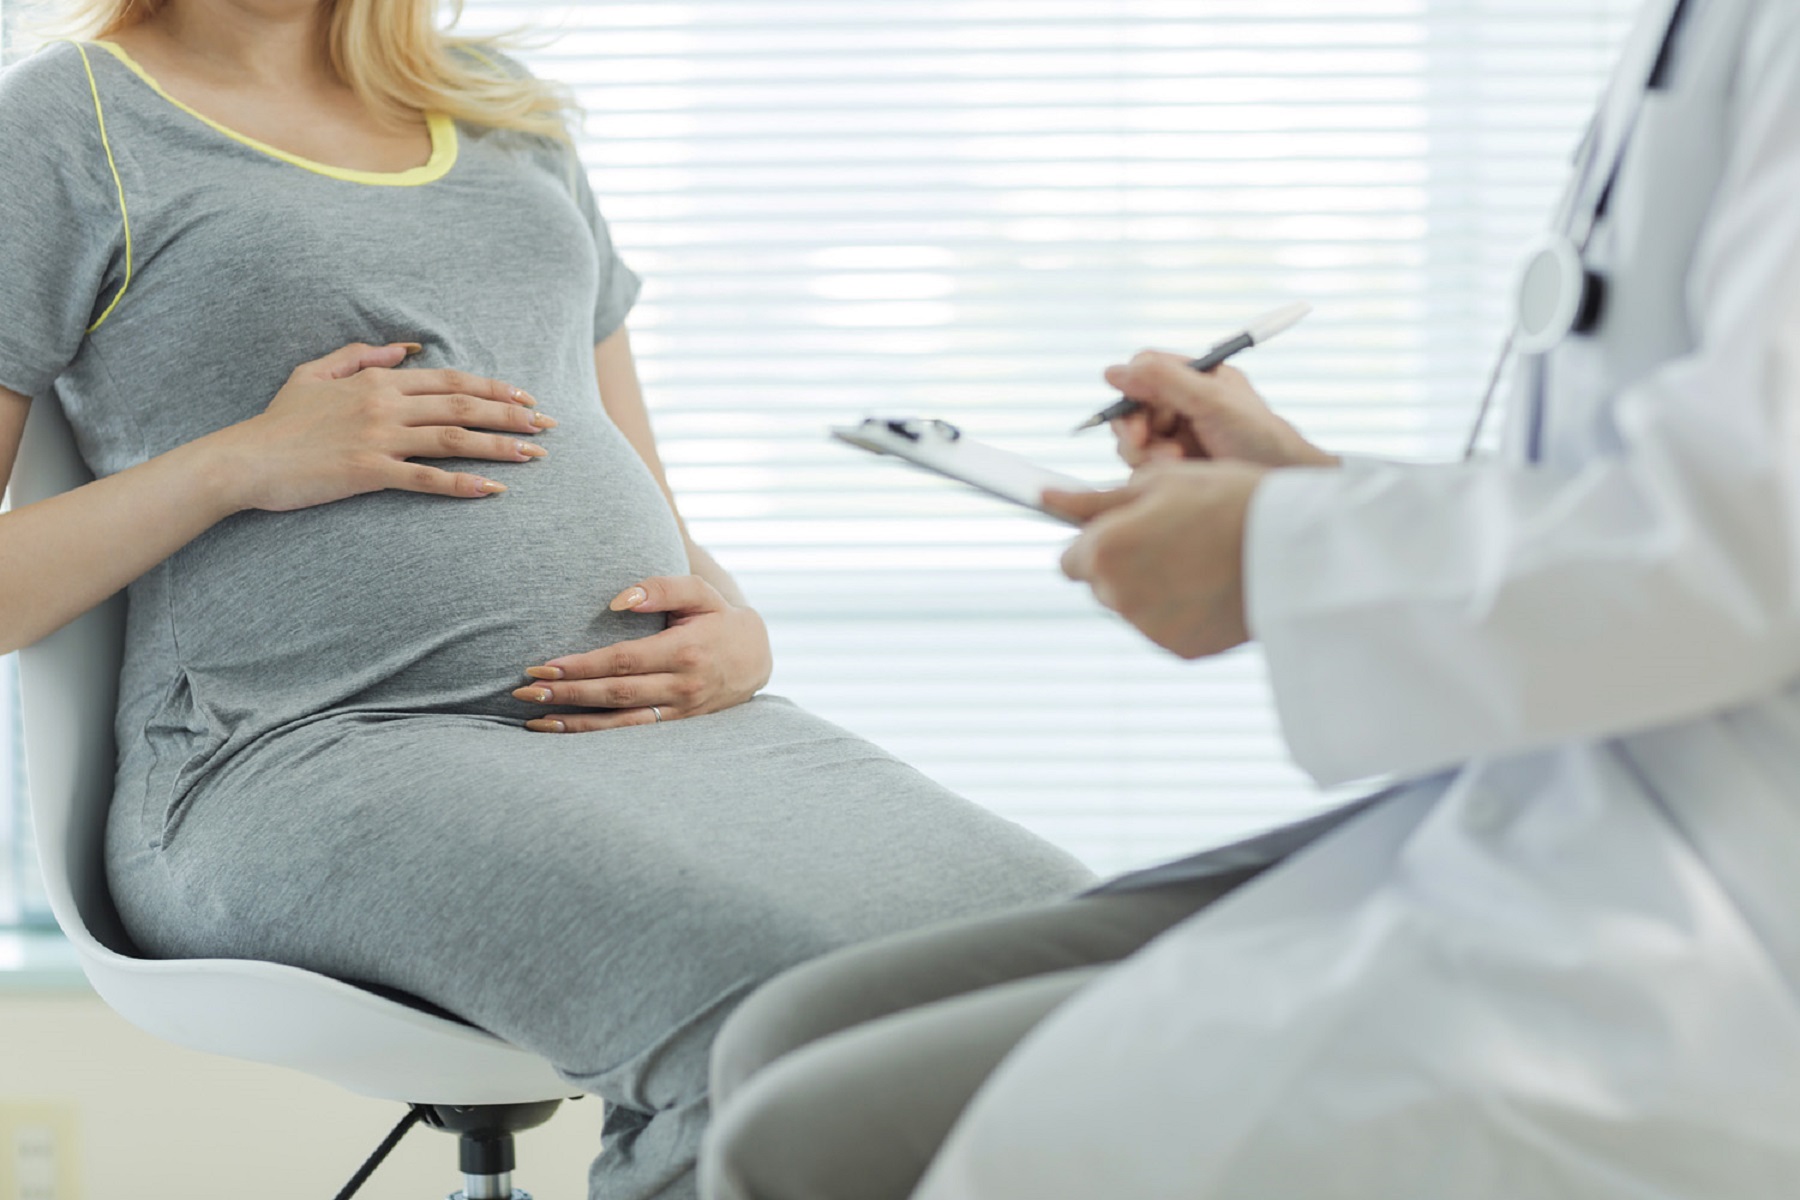 Μελέτη Εγκυμοσύνη: Ο πλακούντας μπορεί να βοηθήσει στην πρόβλεψη επιπλοκών ήδη από το πρώτο τρίμηνο